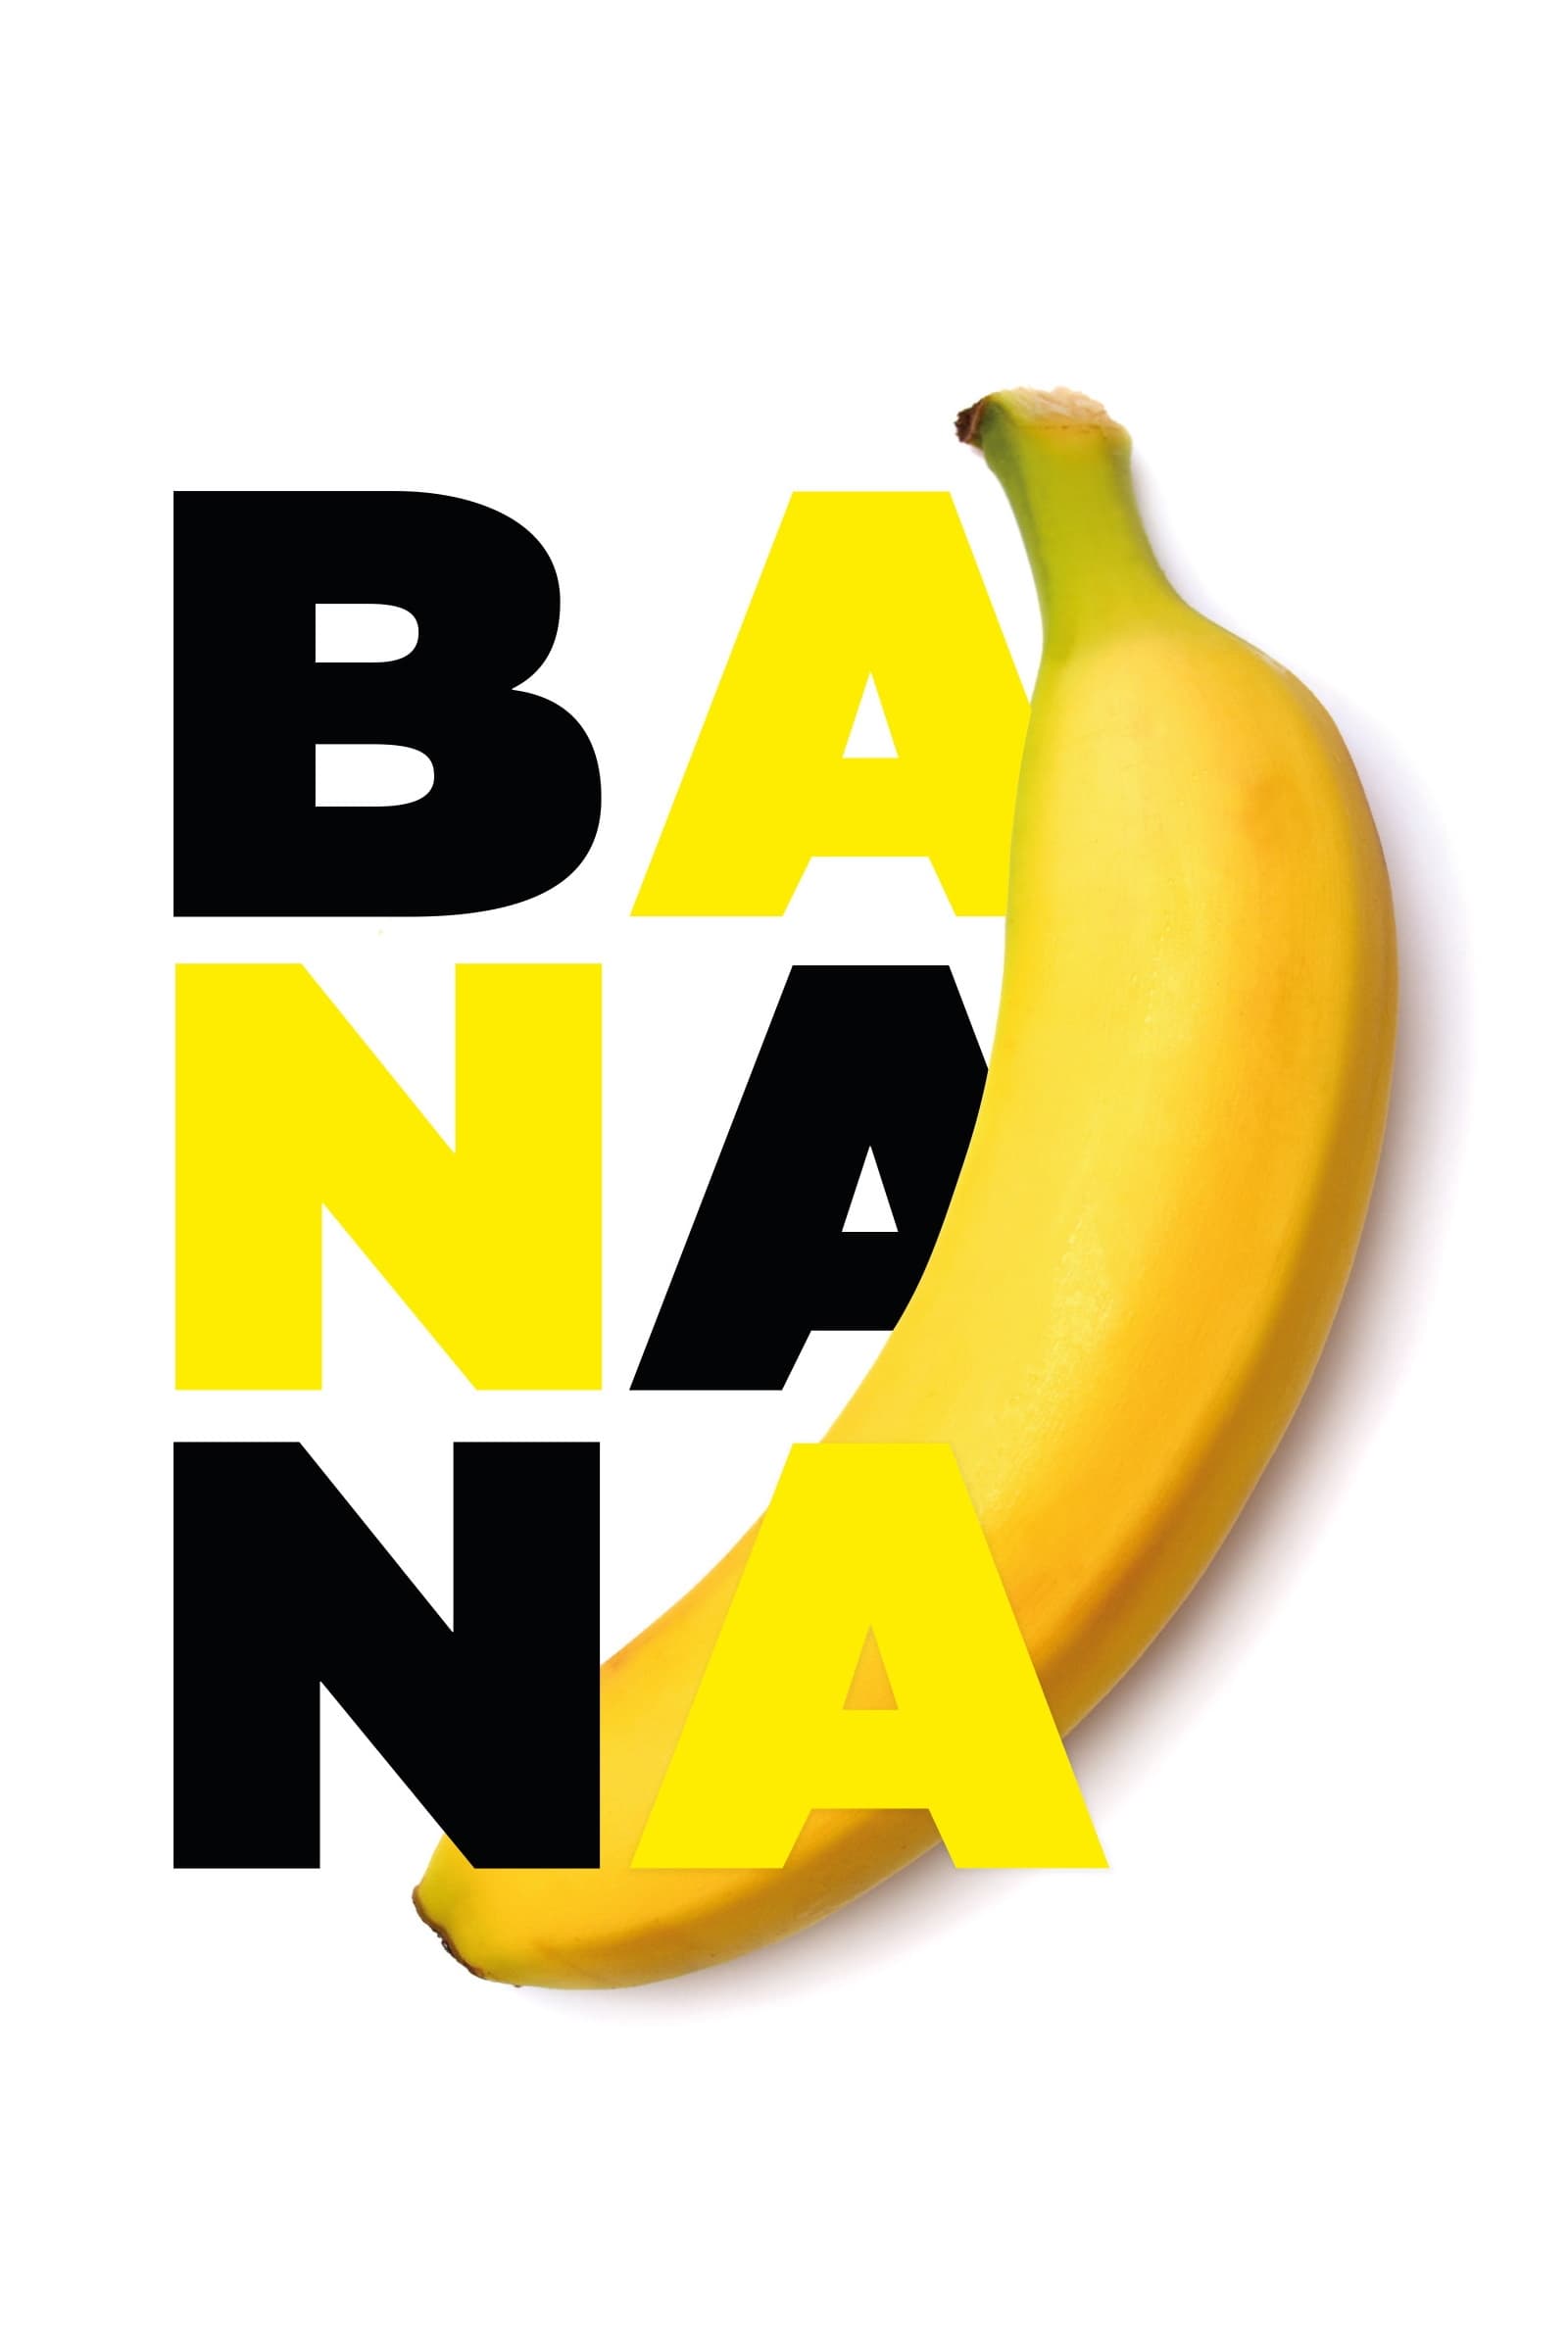 Banana (2015)